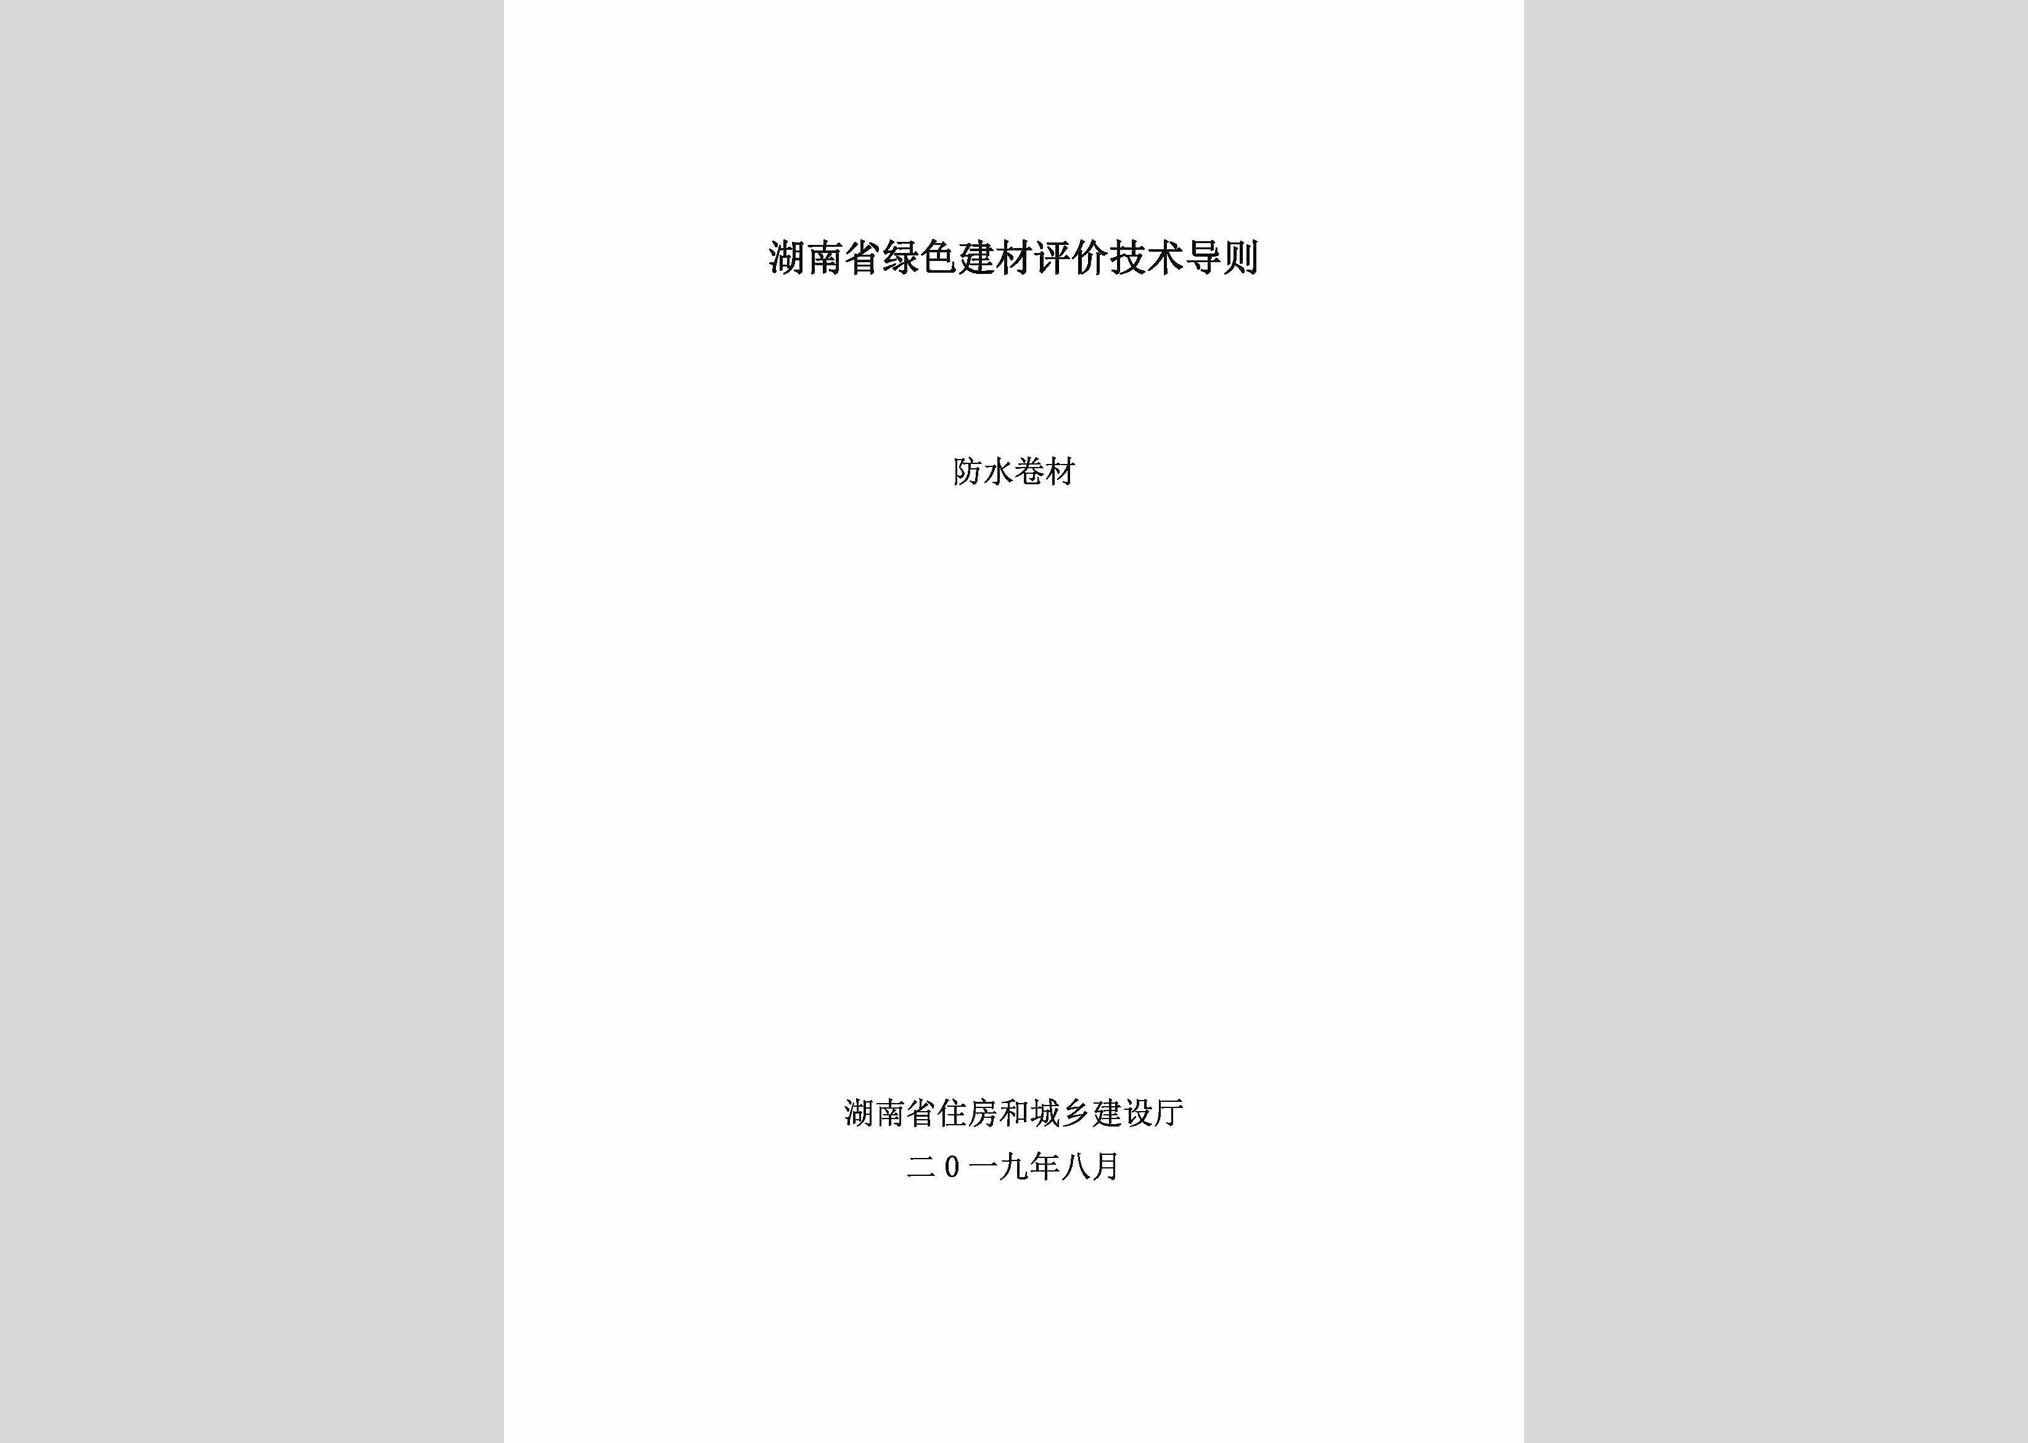 LSPJDZFS：湖南省绿色建材评价技术导则(防水卷材)